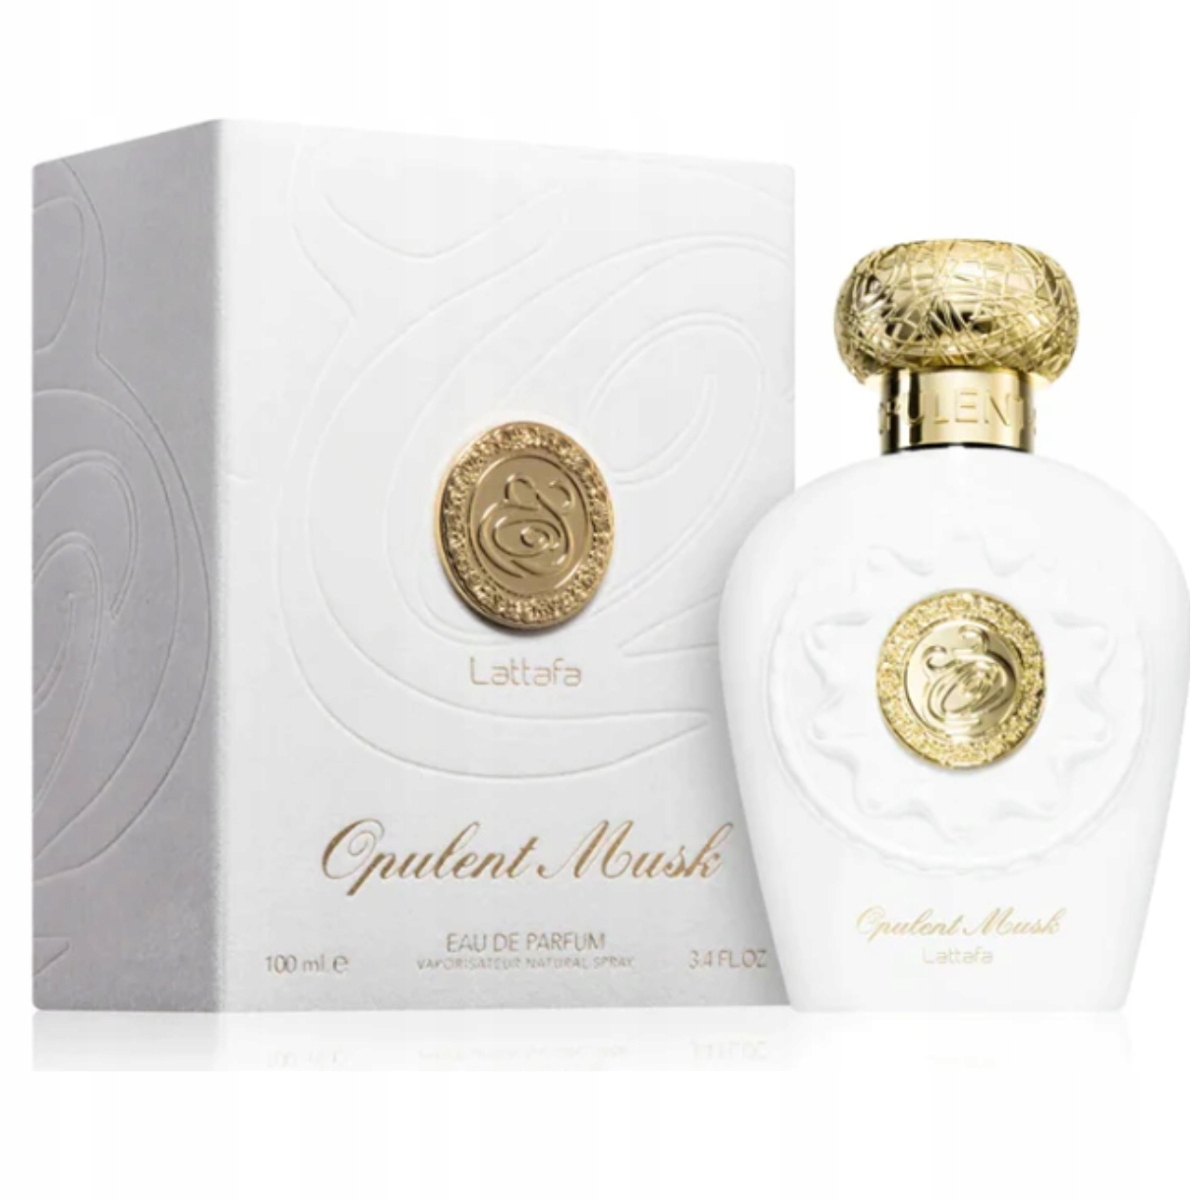 Lattafa Opulent Musk 100ml edp perfumy arabskie